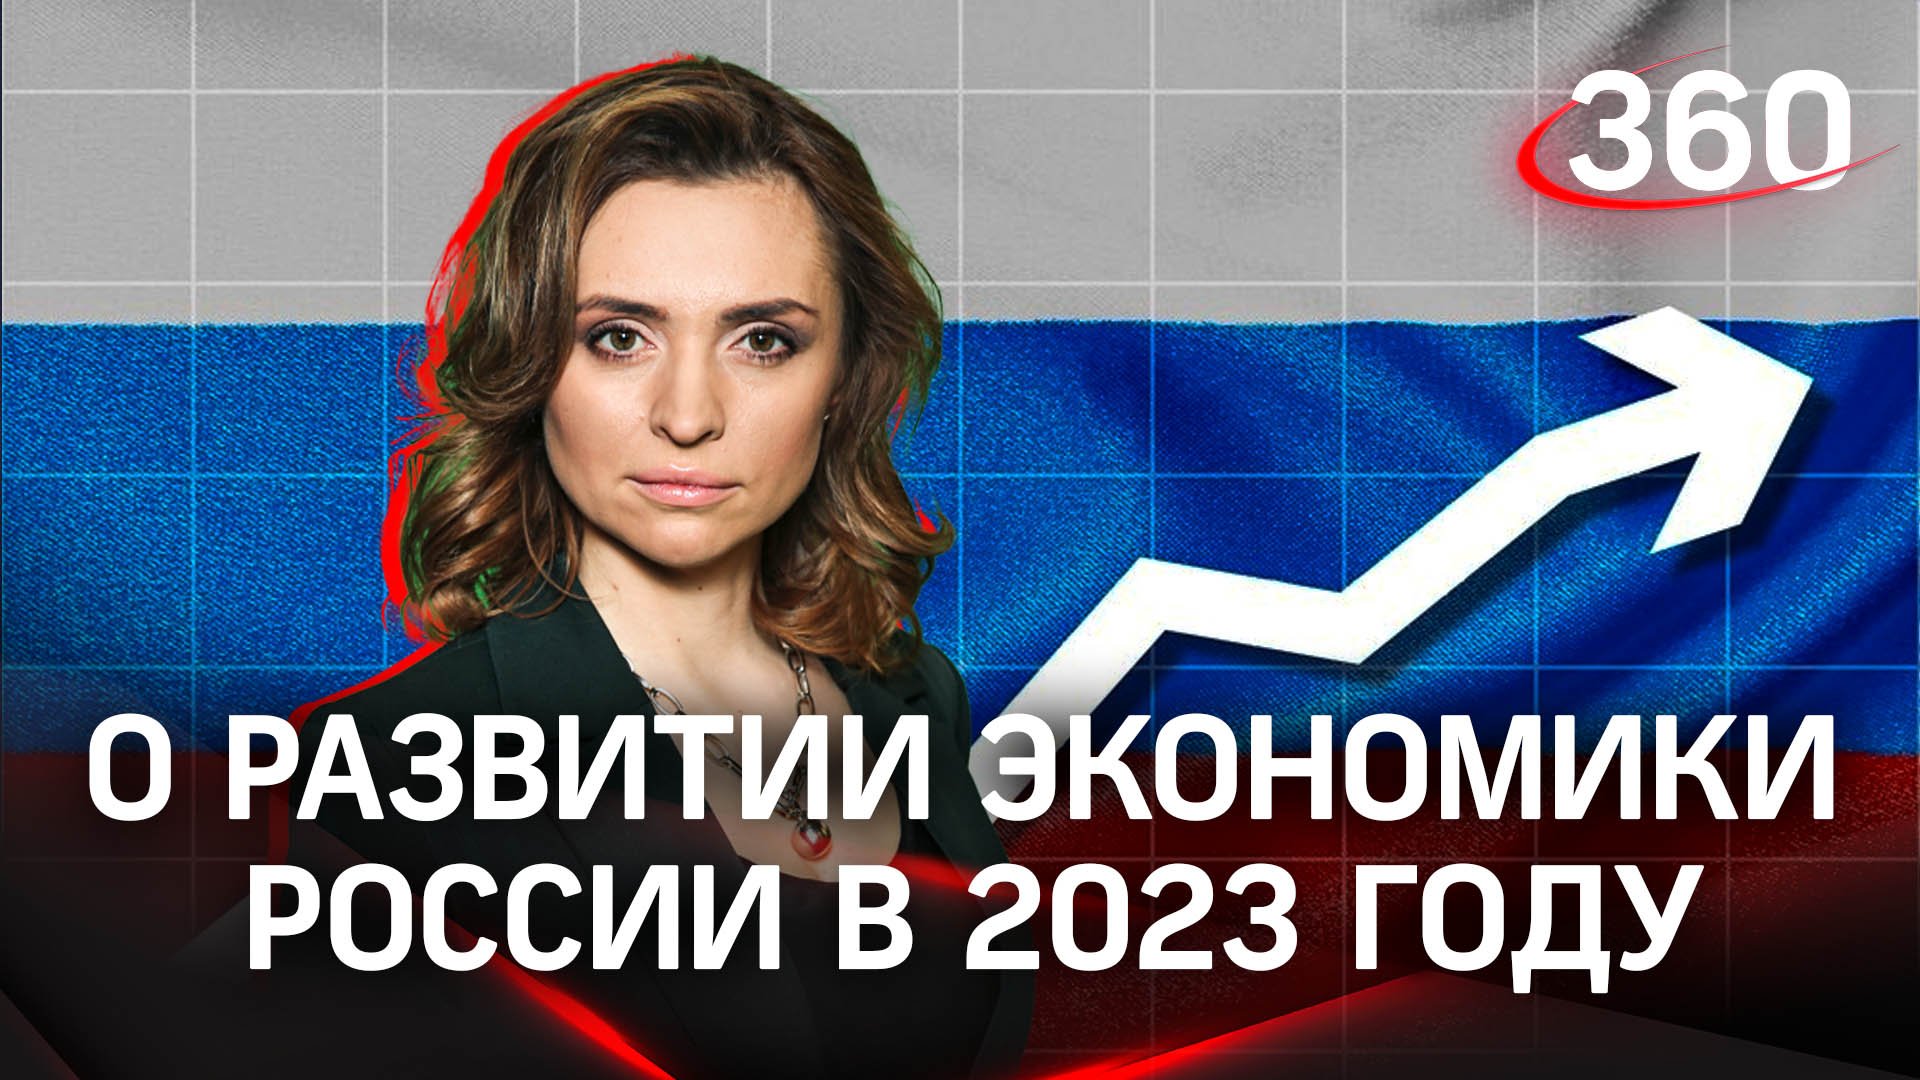 О развитиии экономики России на 2023 год | Екатерина Малашенко и Валерий Корнеев